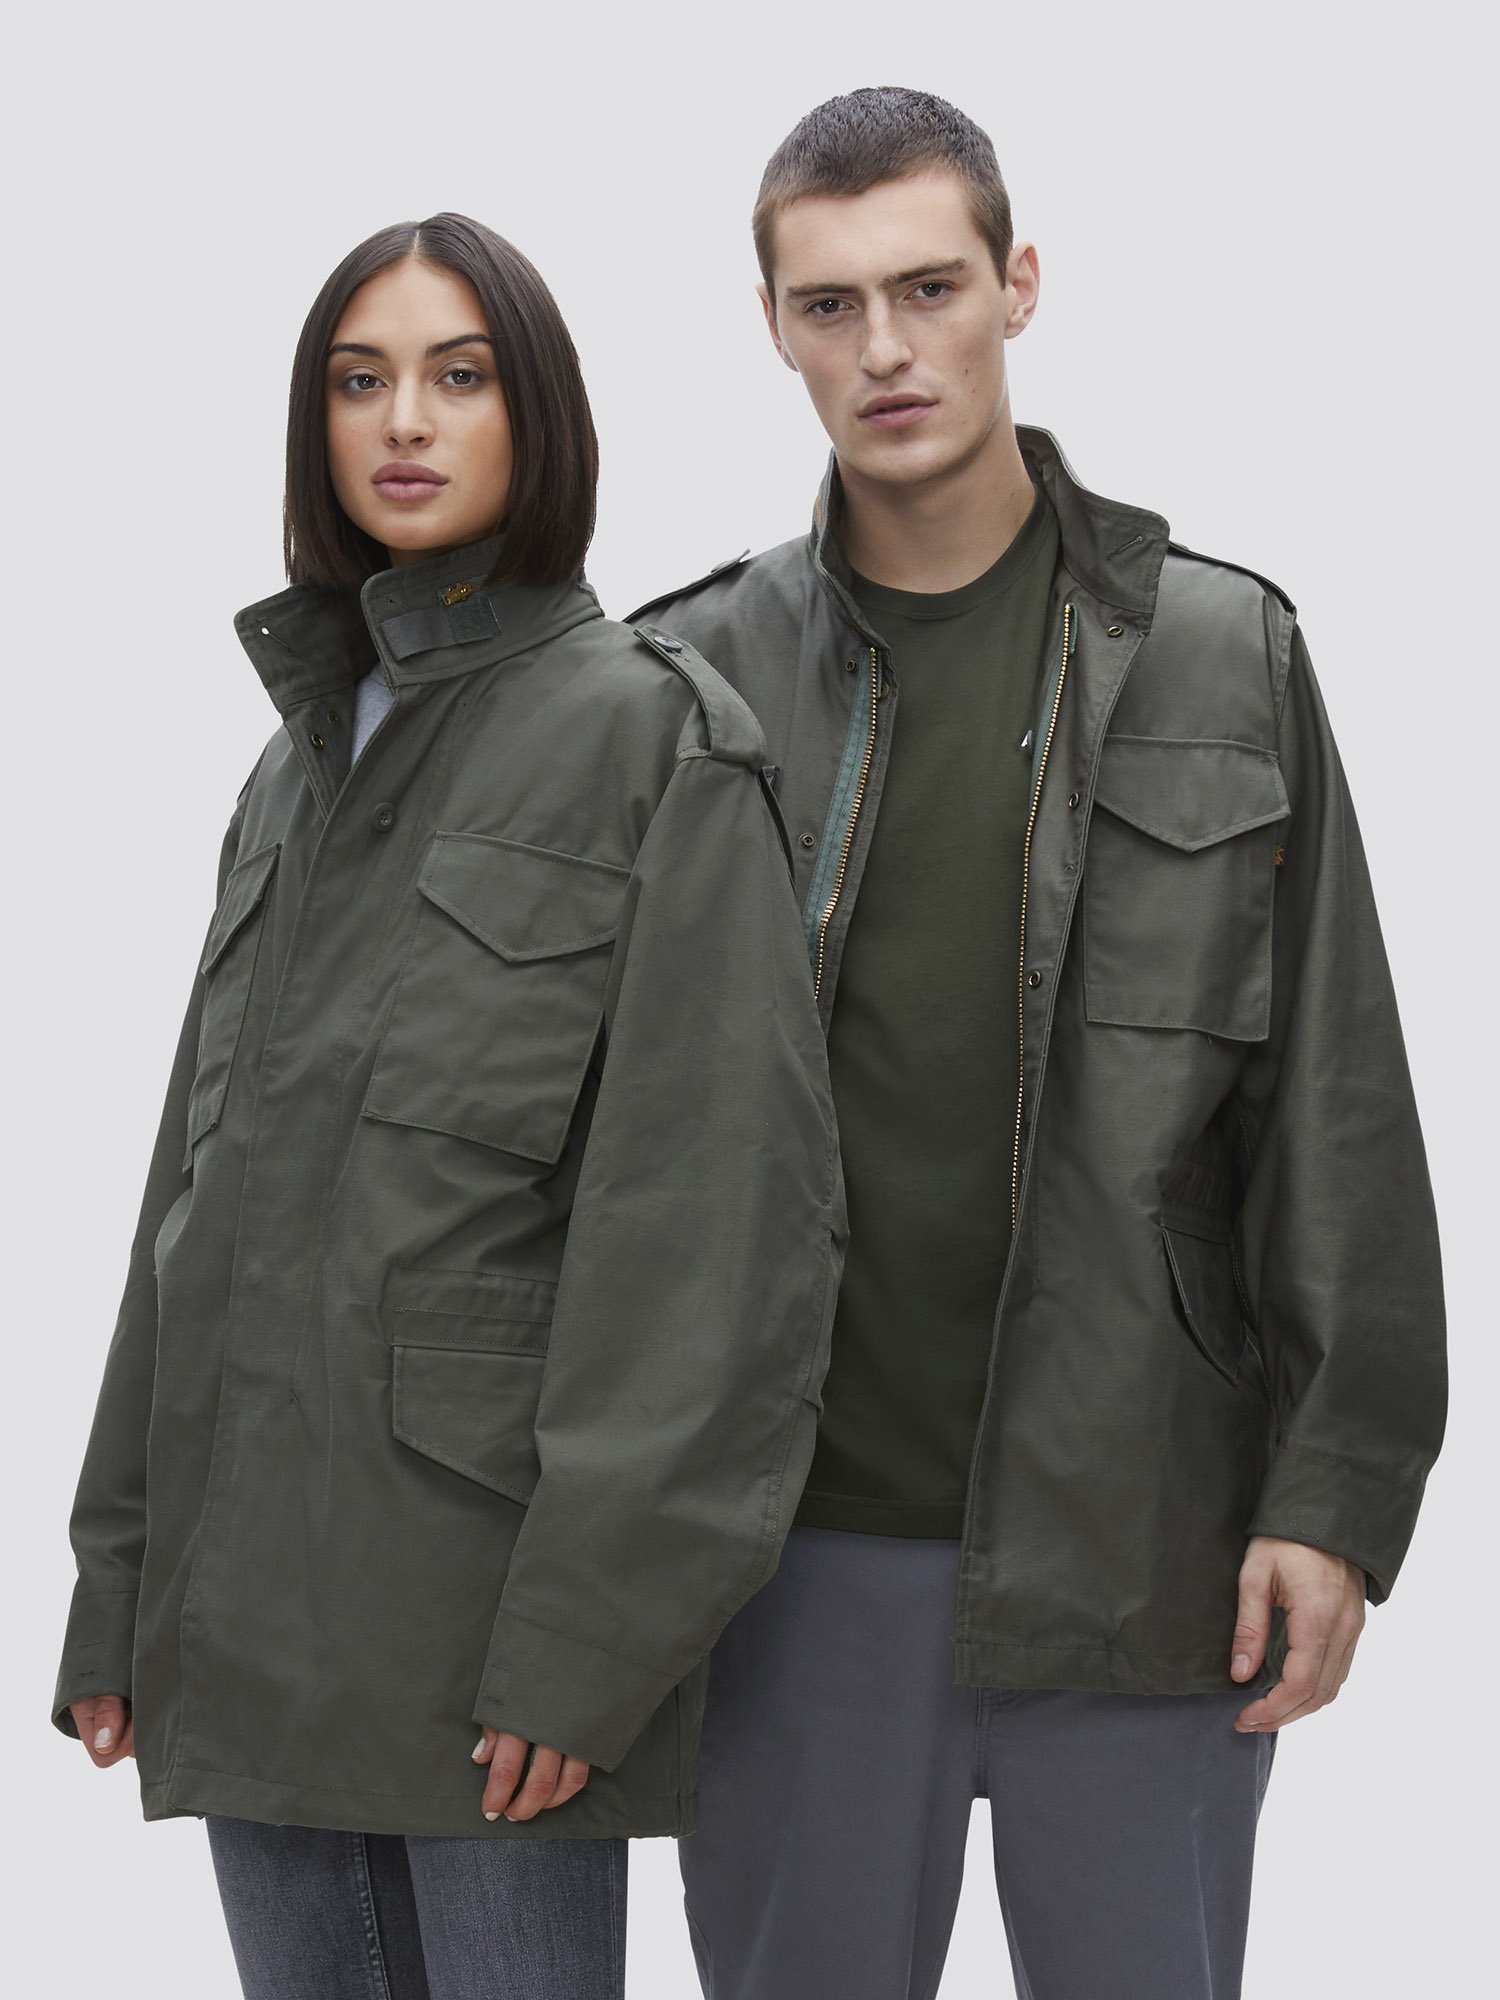 Куртка M-65 Field Coat (Alpha Industries USA) купить в Москве - Podwal